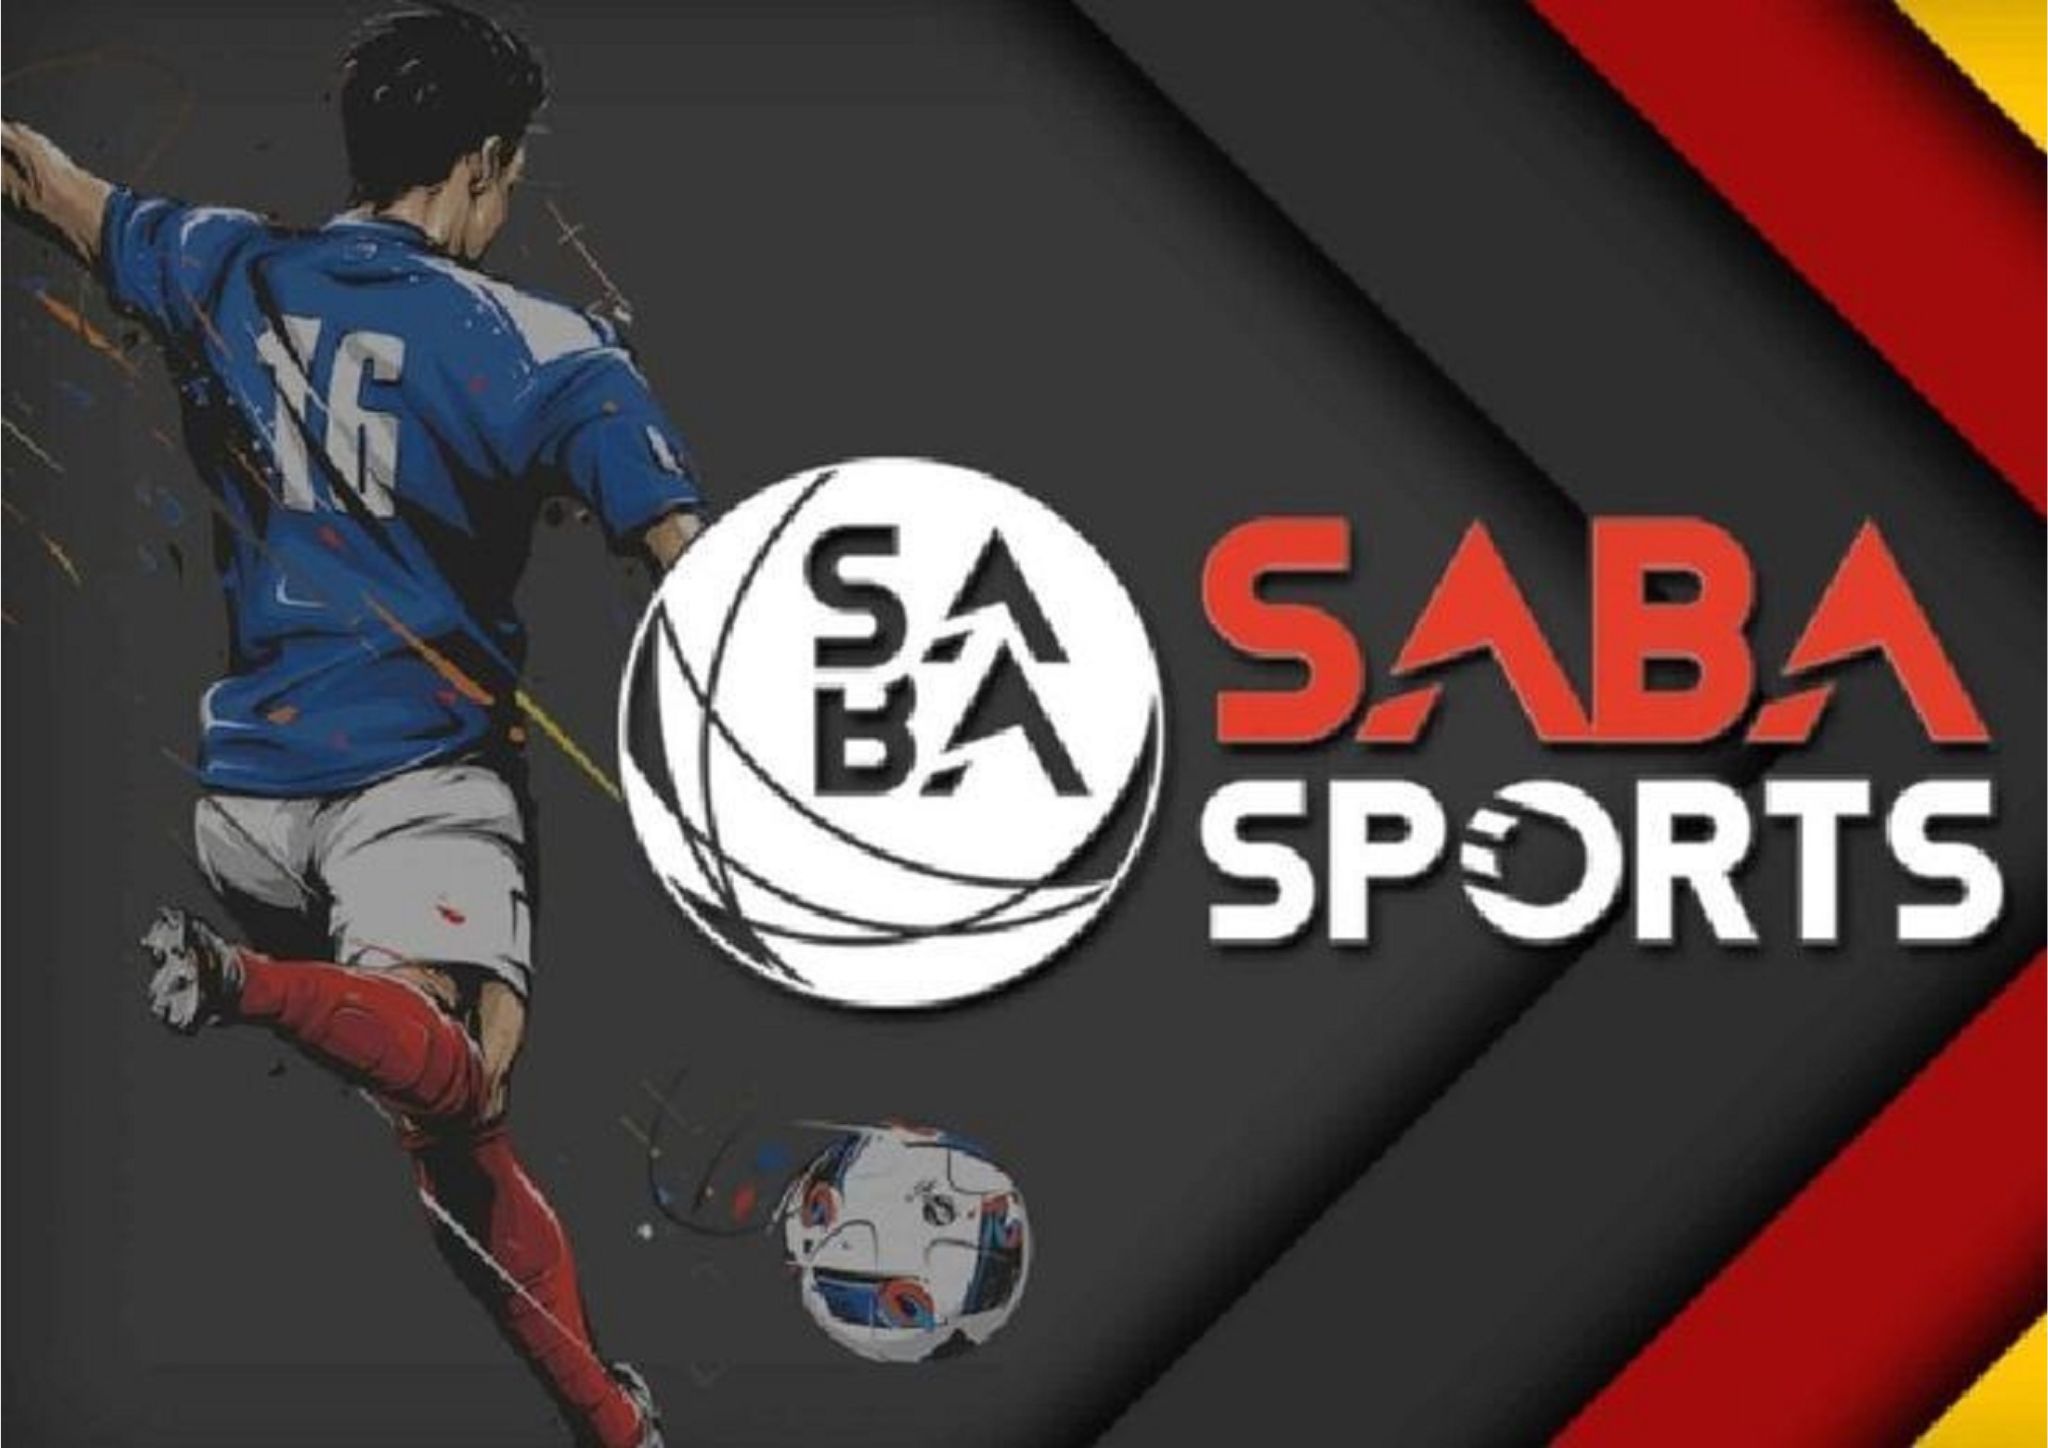 Tổng hợp mẹo chơi Saba Sports Vz99 dễ thắng lớn